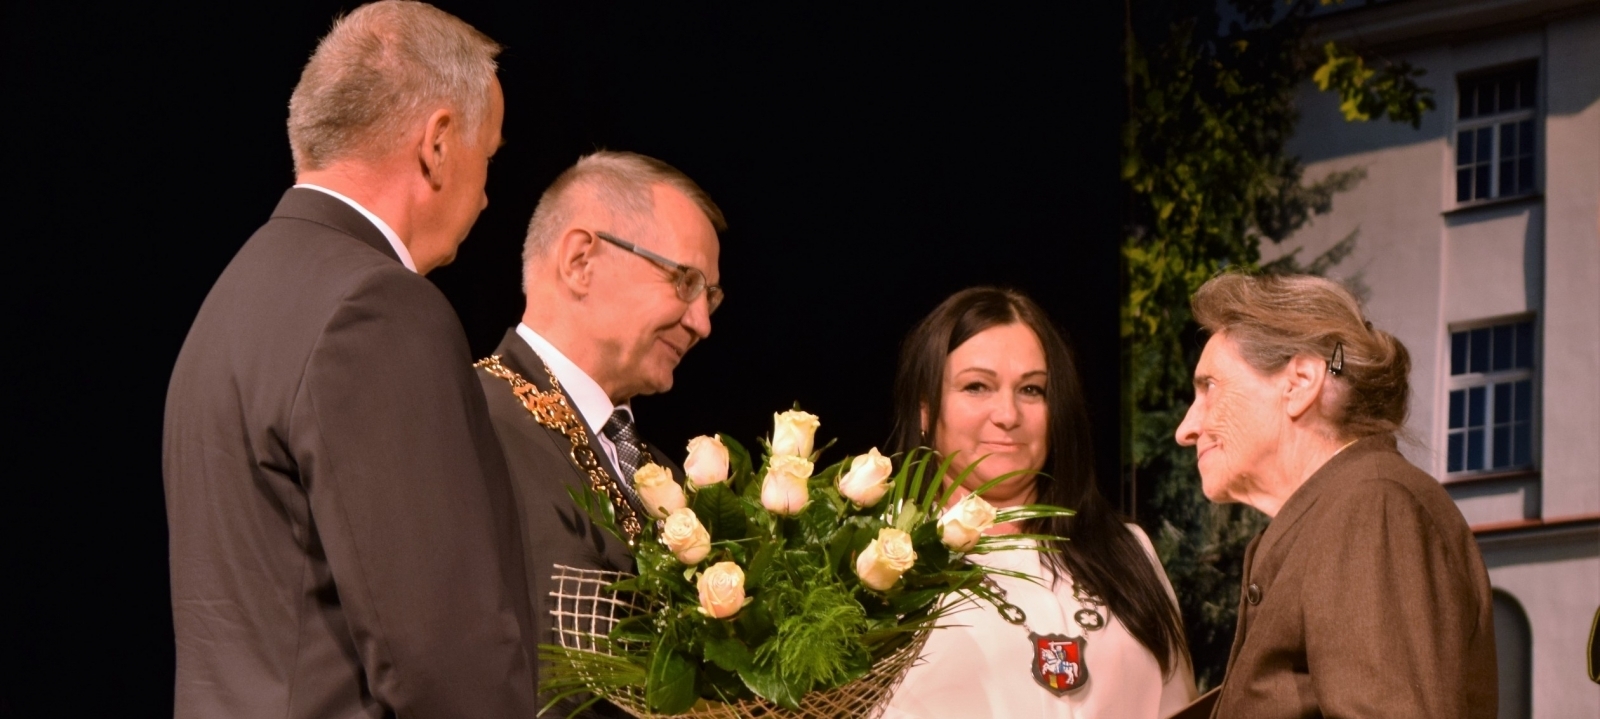 Honorowe Obywatelstwo dla Barbary Czartoryskiej - foto 3.jpg